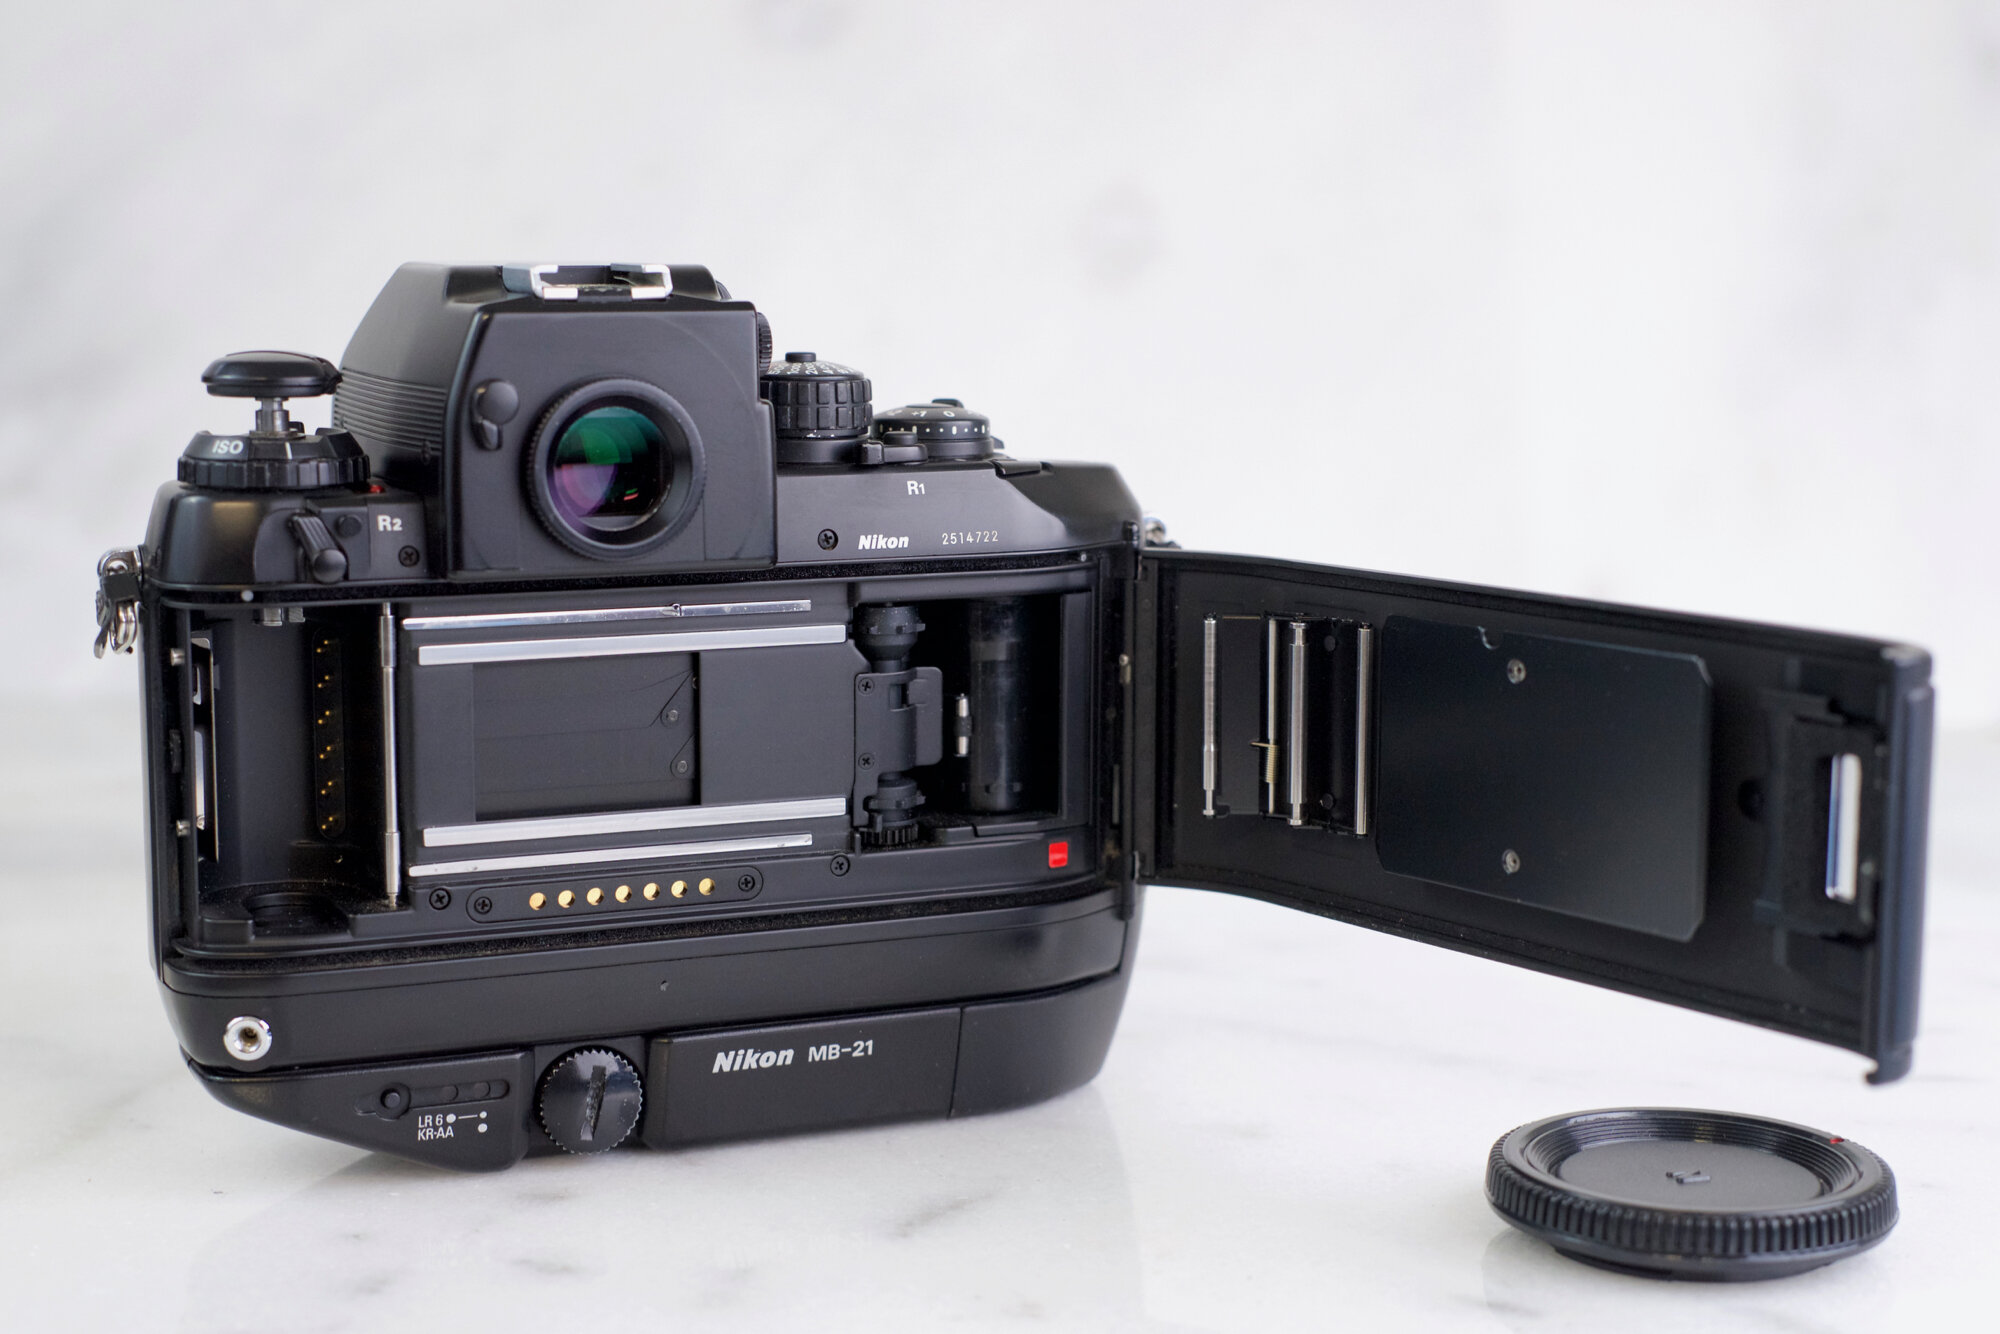 Nikon F4 (F4S) Professional 35mm Film SLR Camera with MB-21